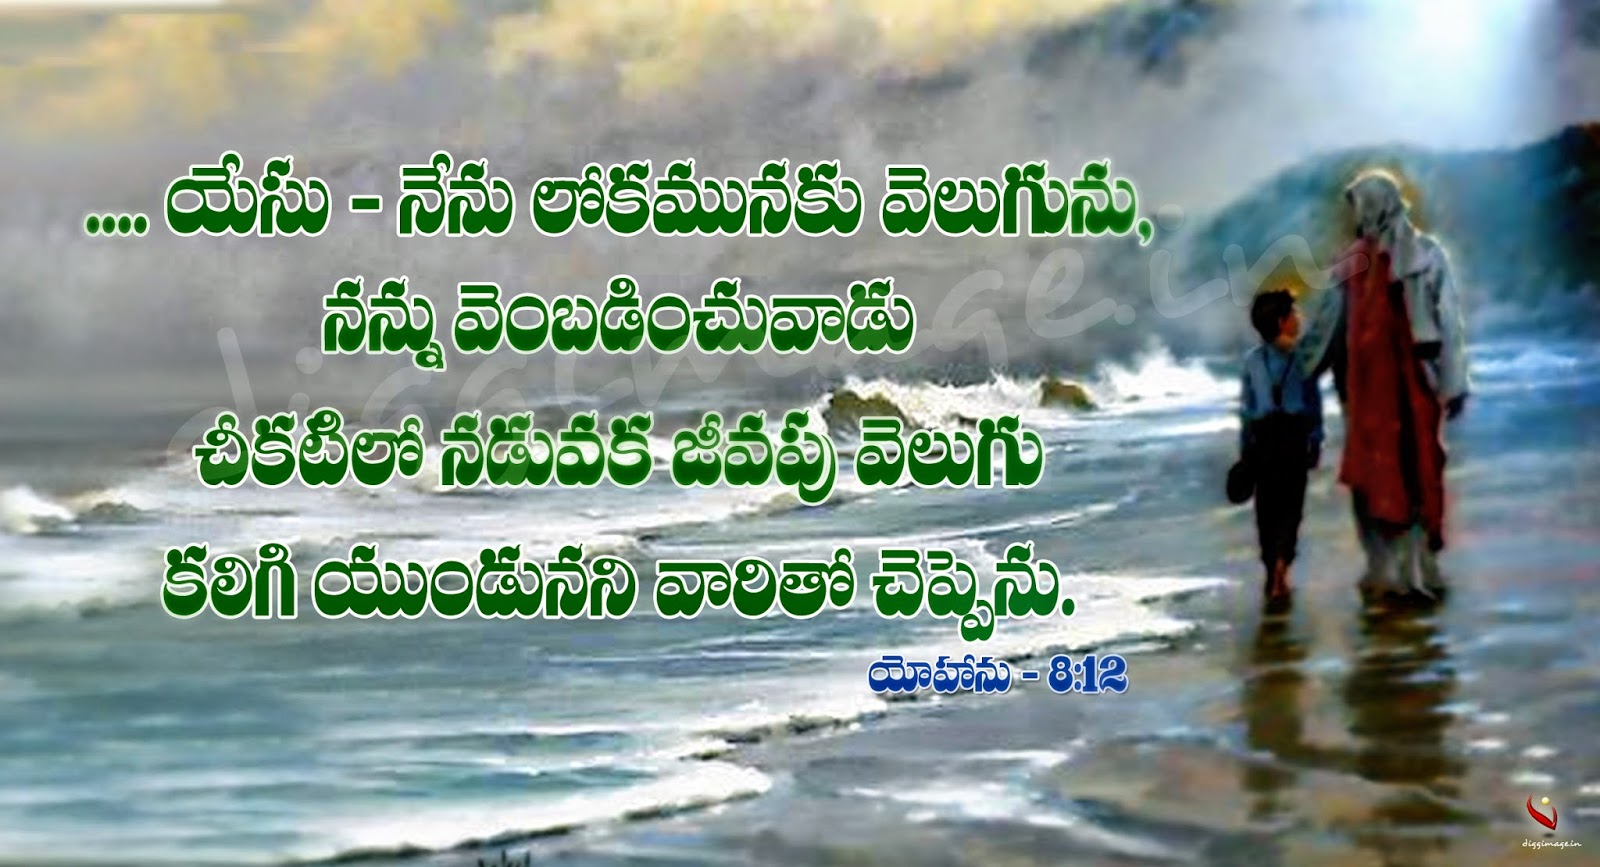 Bible Verses wallpapers in Telugu